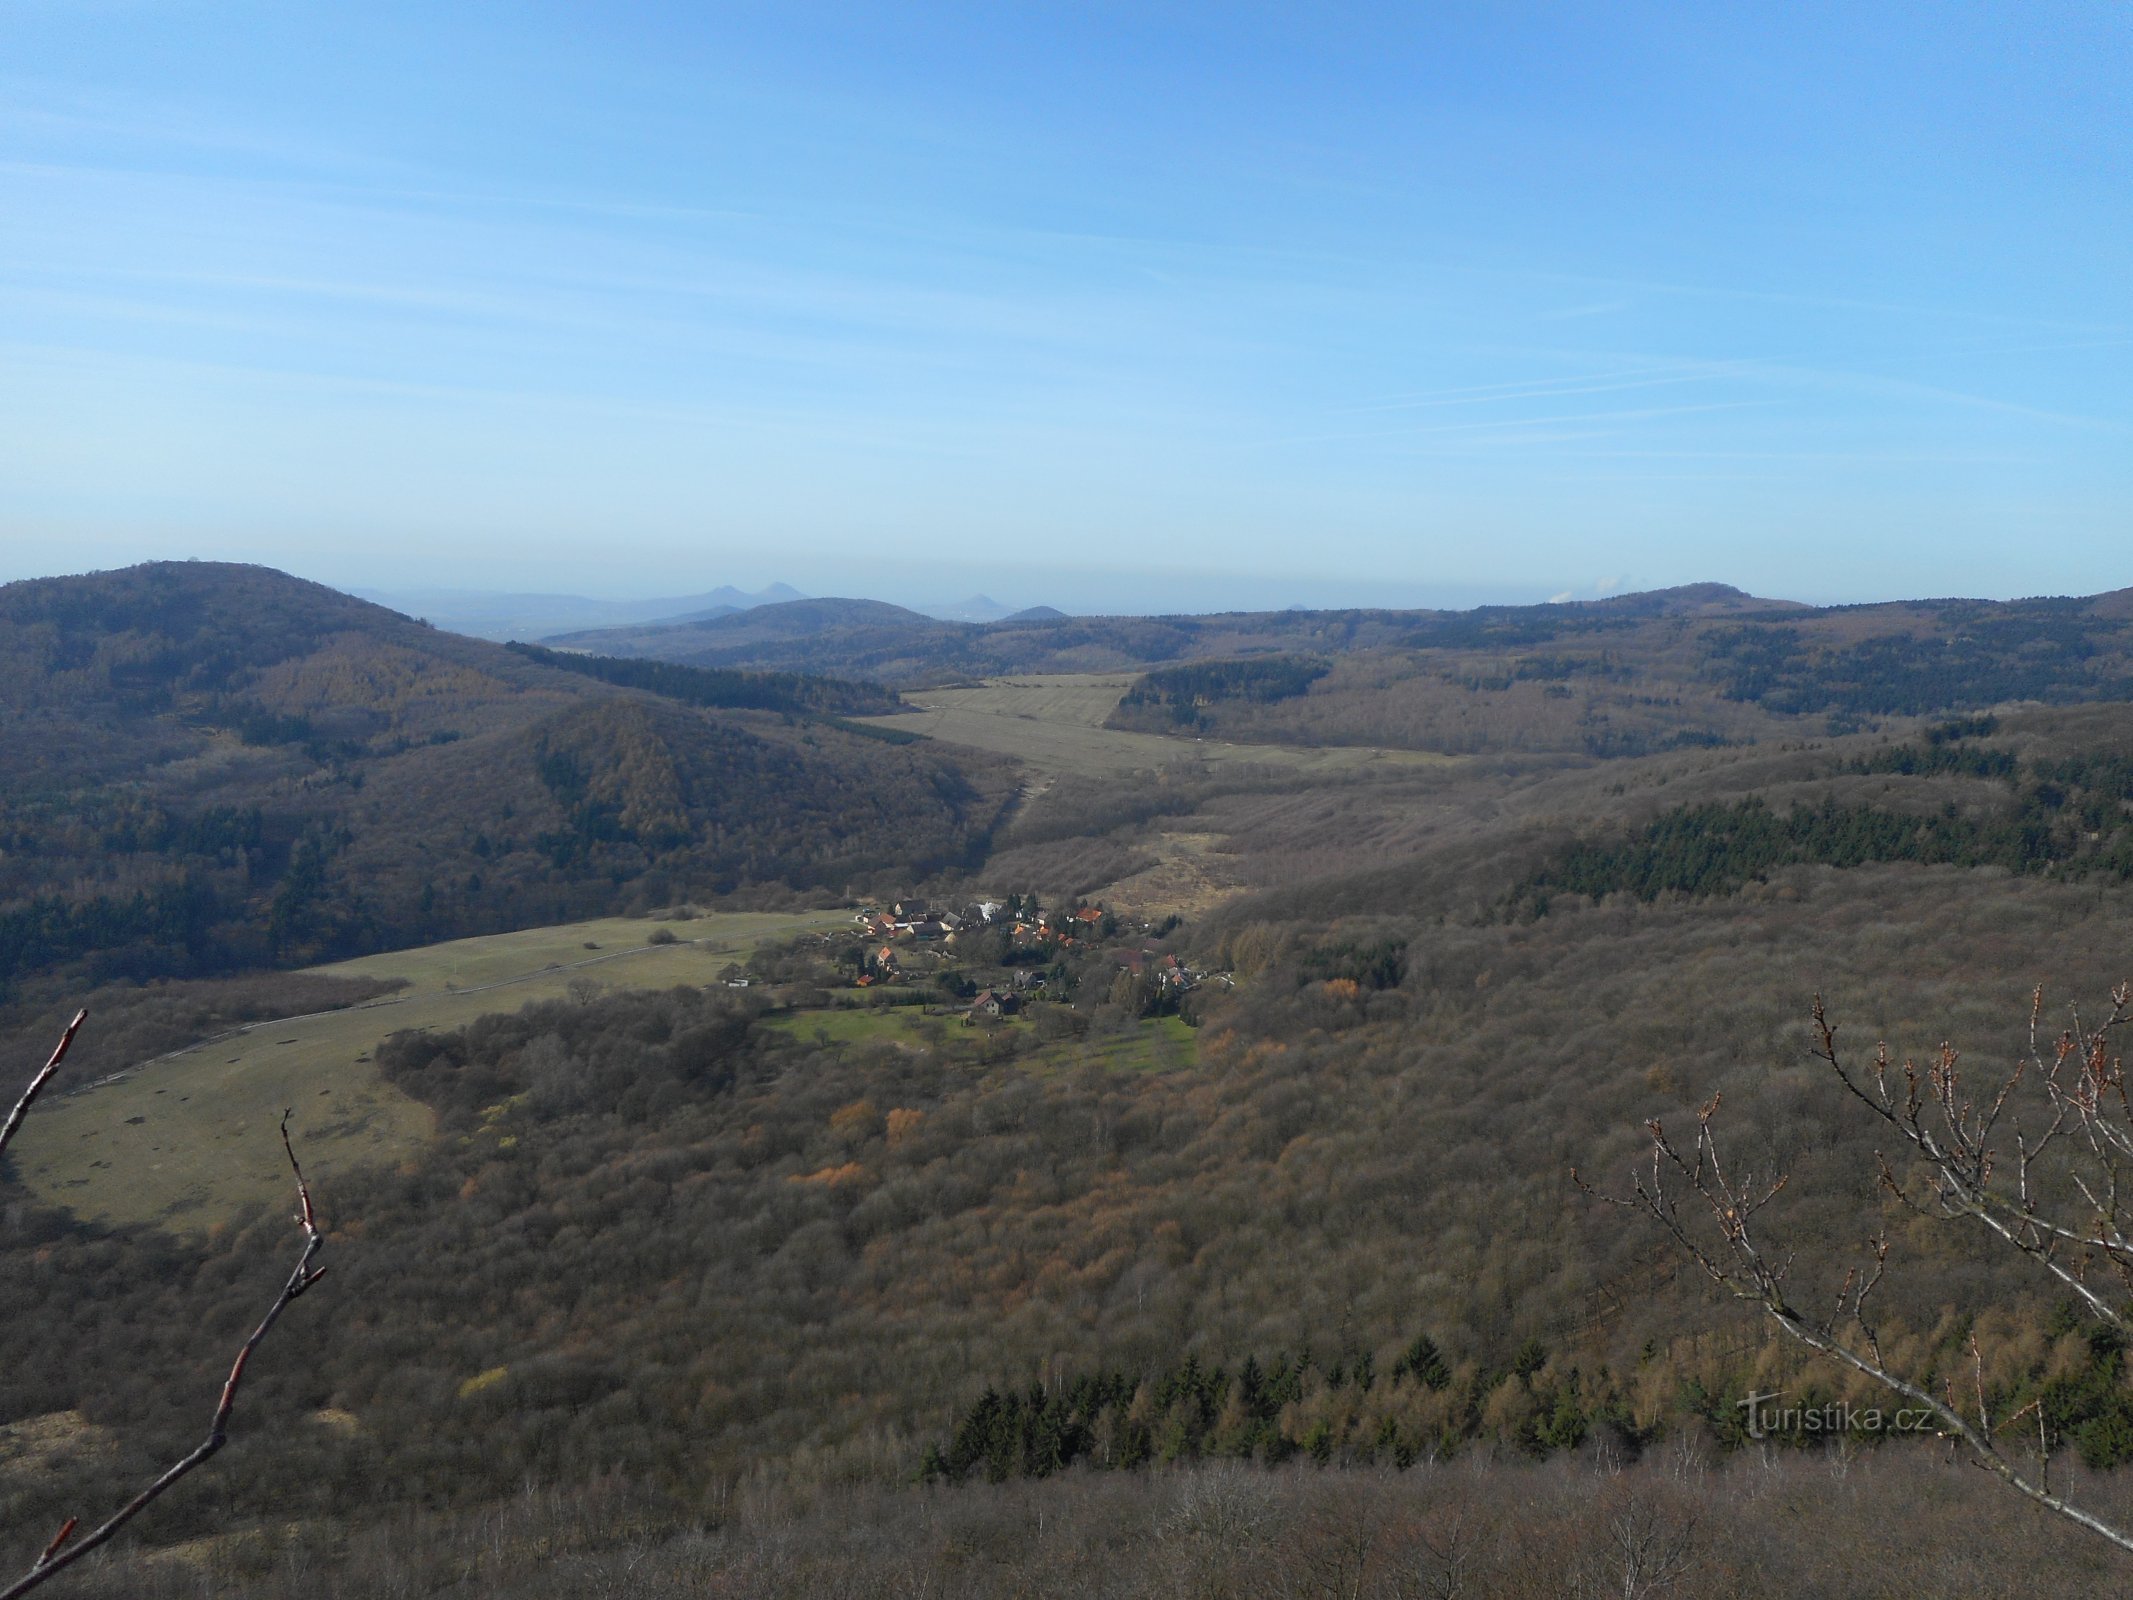 Khung cảnh nhìn từ Lipská hora về phía tây...